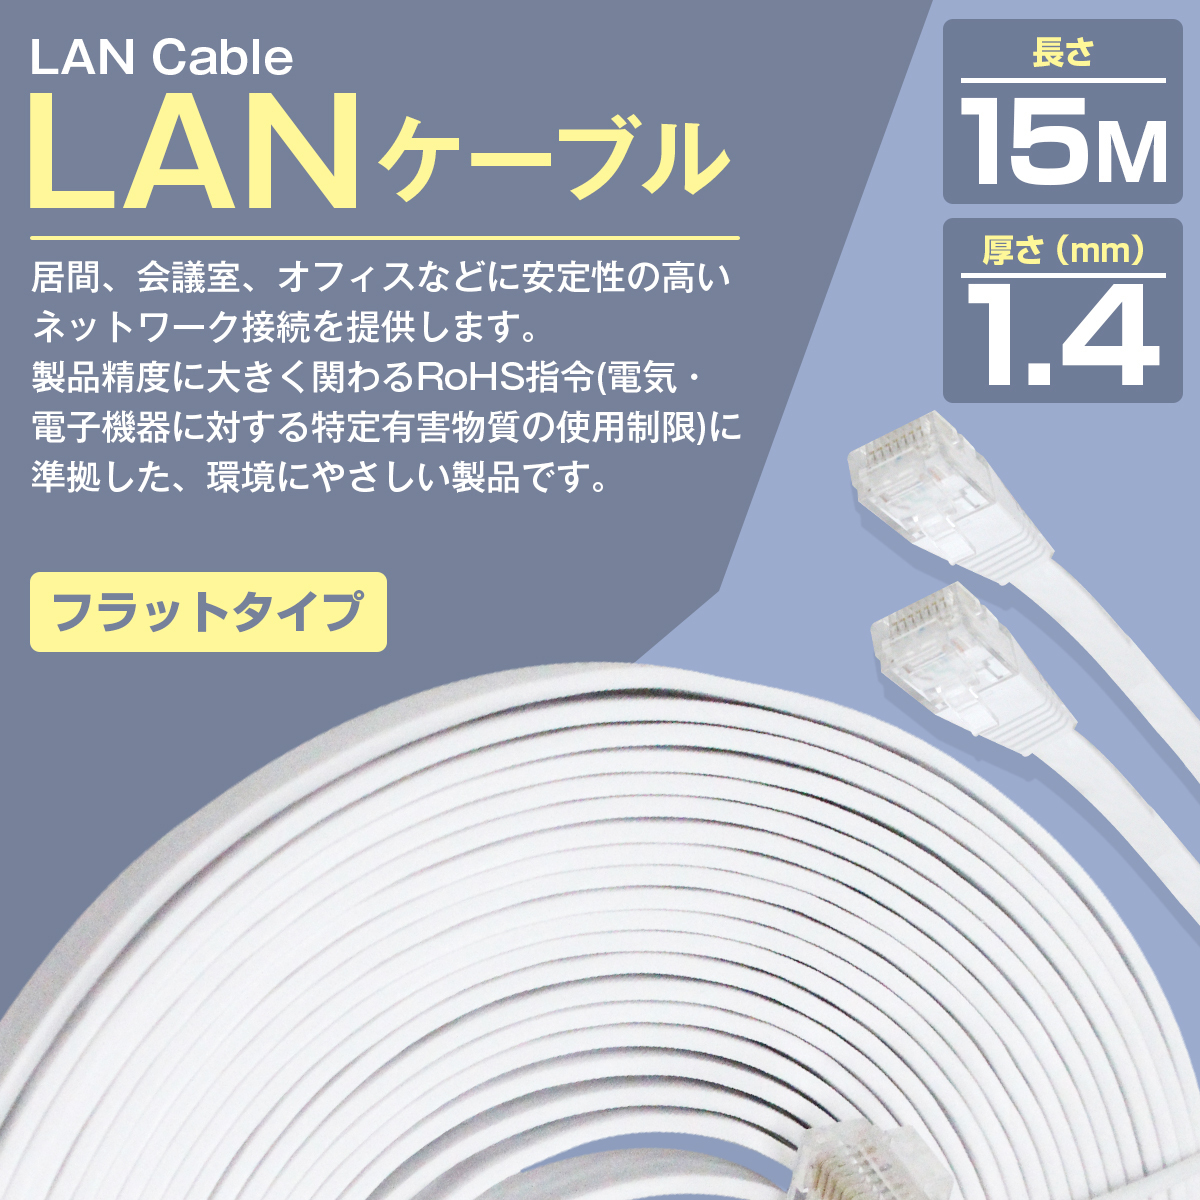 CAT6 категория 6 тонкий super Flat LAN кабель 15m 1500cm белый персональный компьютер интернет PC Wi-Fi WiFi маршрутизатор беспроводной проводной электропроводка 